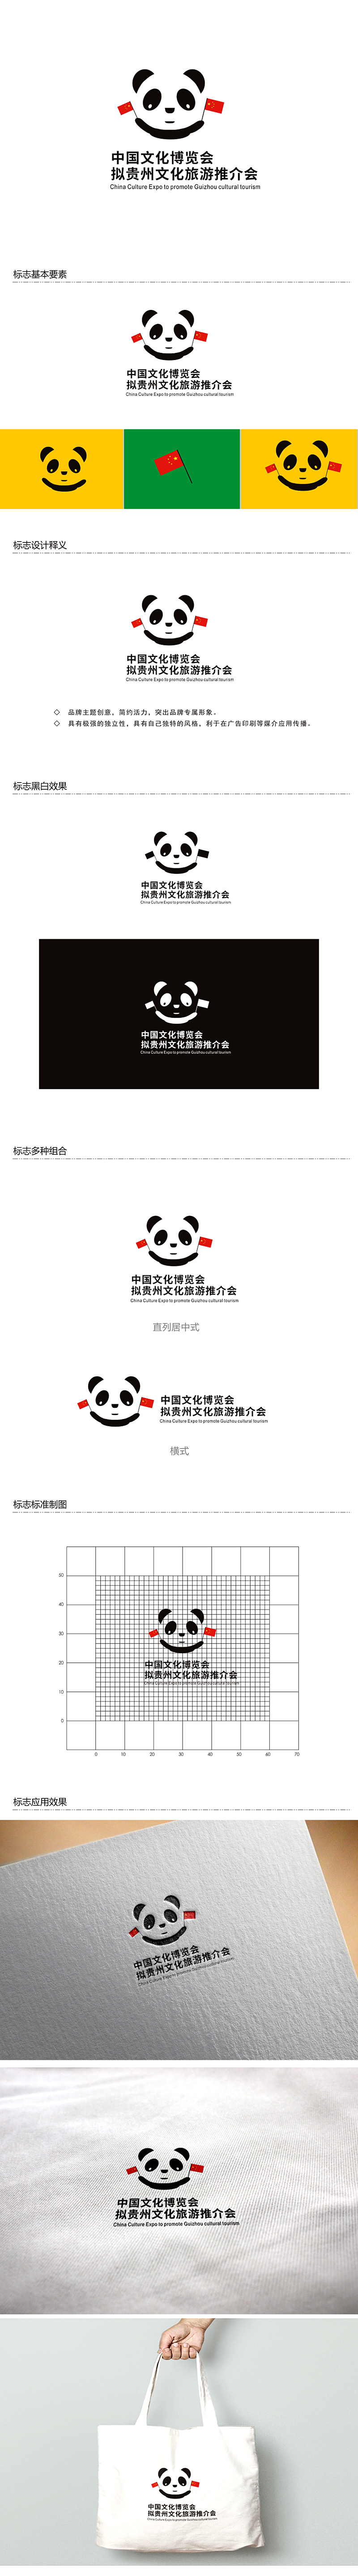 李杰的中国文化博览会拟贵州文化旅游推介会logo设计